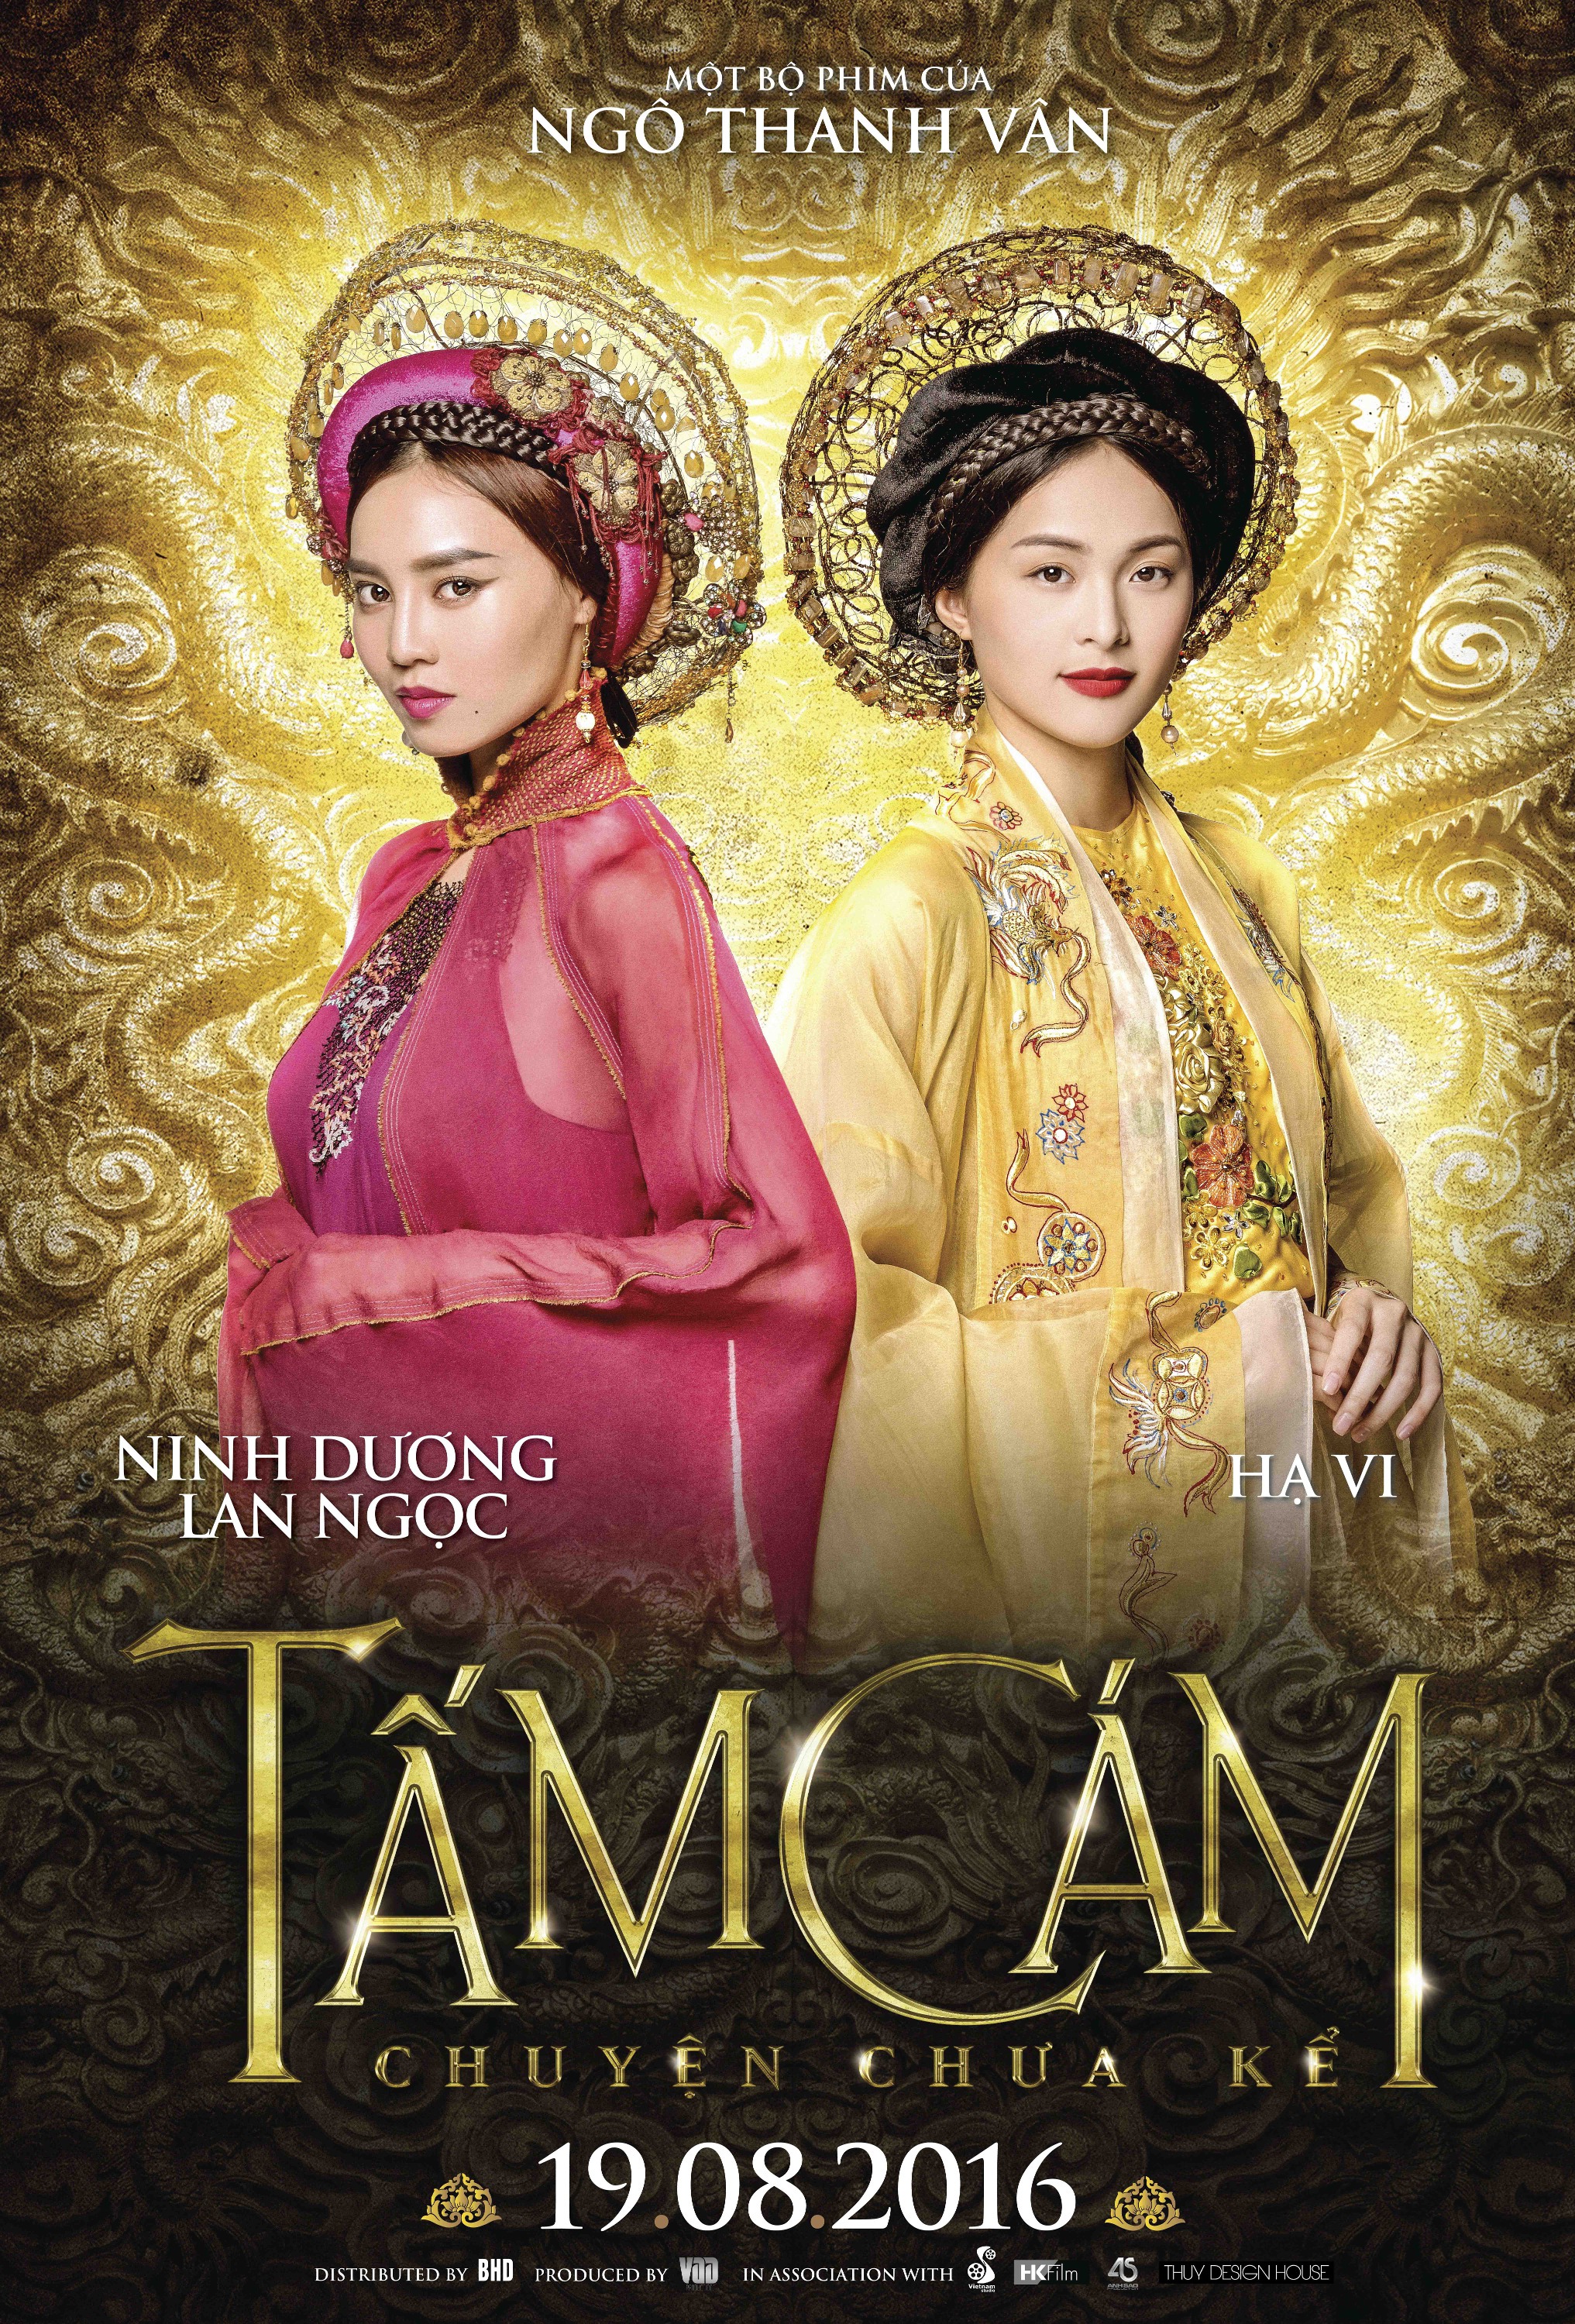 Tam Cam Chuyen Chua Ke 1 Of 15 Mega Sized Movie Poster Image Imp Awards 